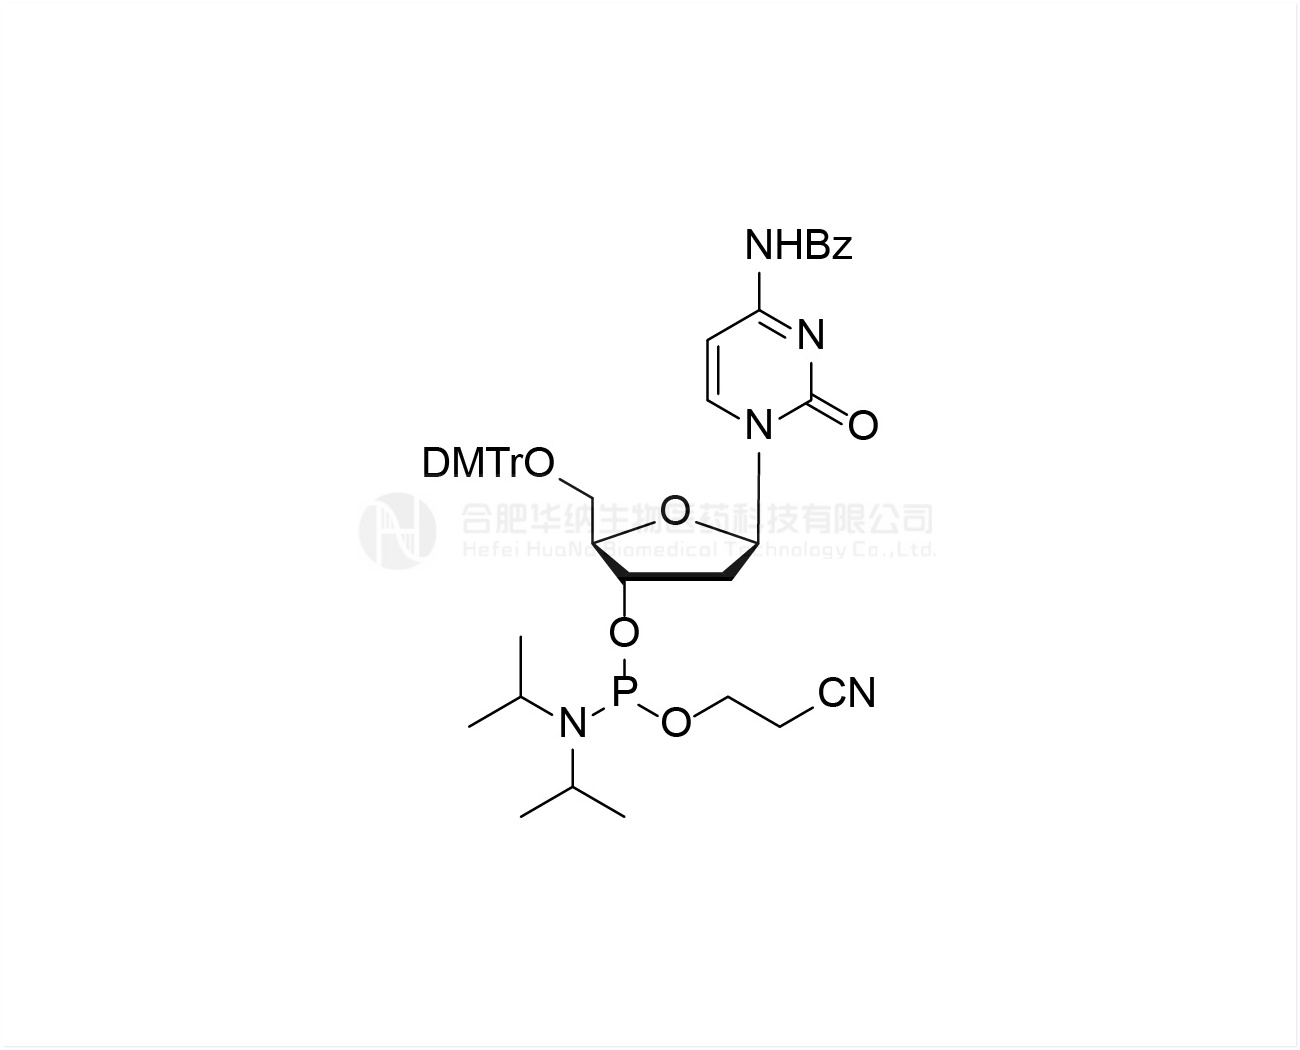 DMTr-dC(Bz)-3'-CE-Phosphoramidite